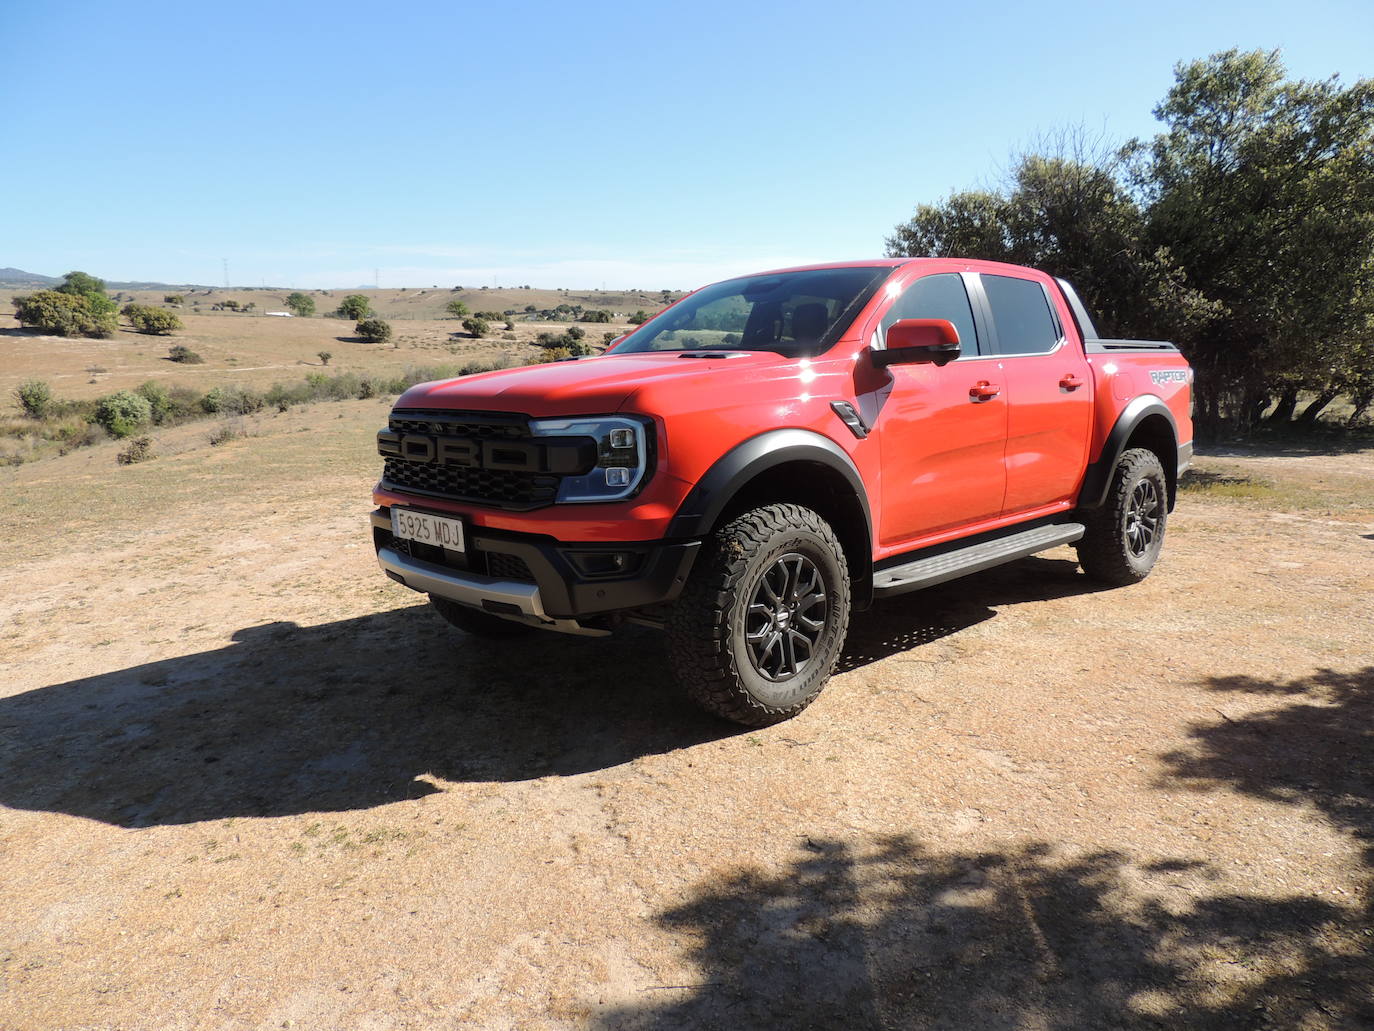 Construido para mandar en el desierto, las montañas y en cualquier lugar intermedio, el Ranger Raptor de nueva generación eleva el listón de las prestaciones off-road como un pickup construido para los verdaderos entusiastas.